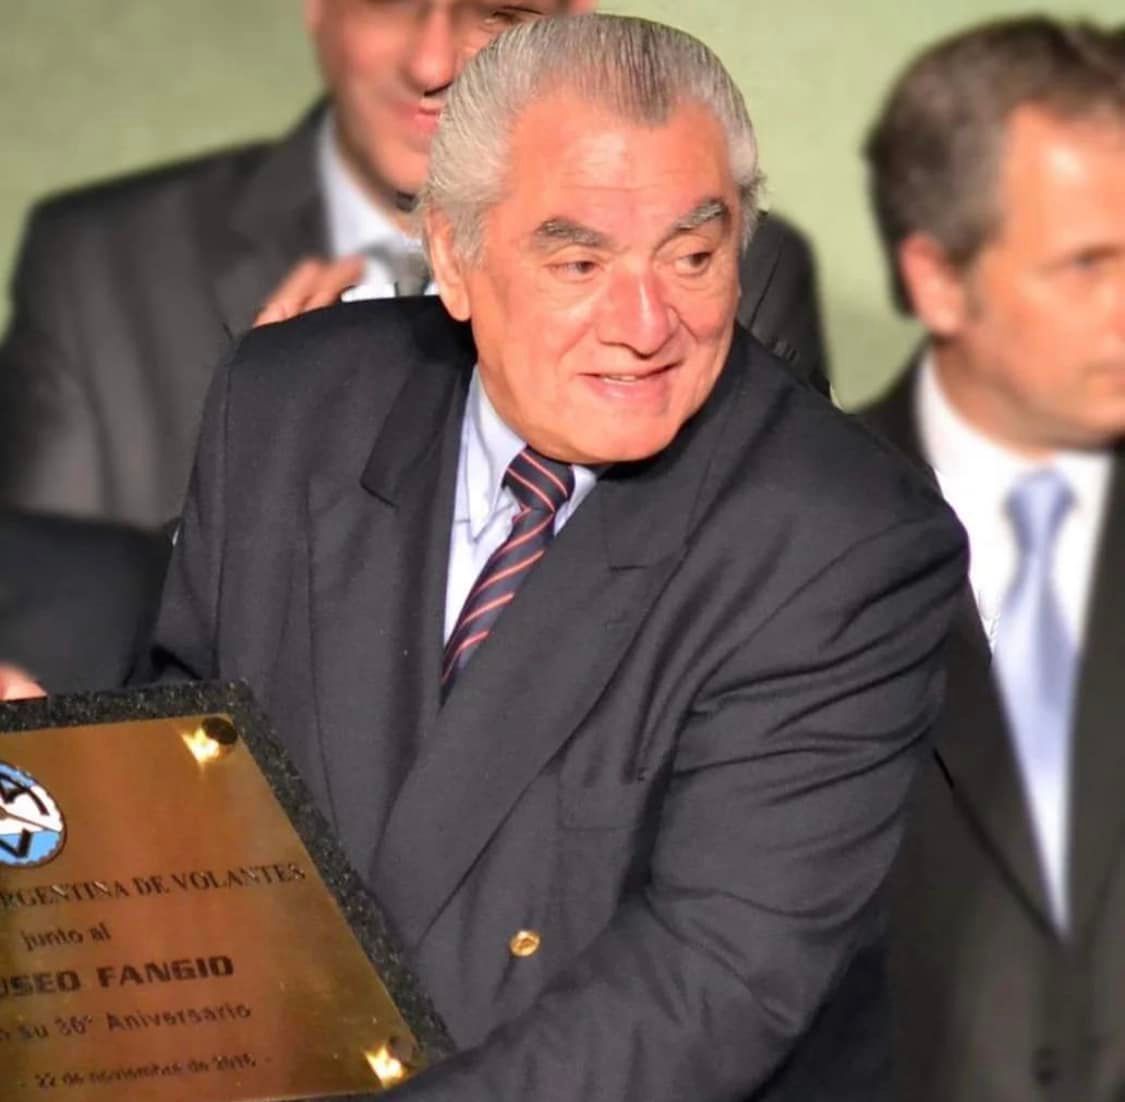 Falleció Carlos Álvarez, vicepresidente de la Fundación Fangio